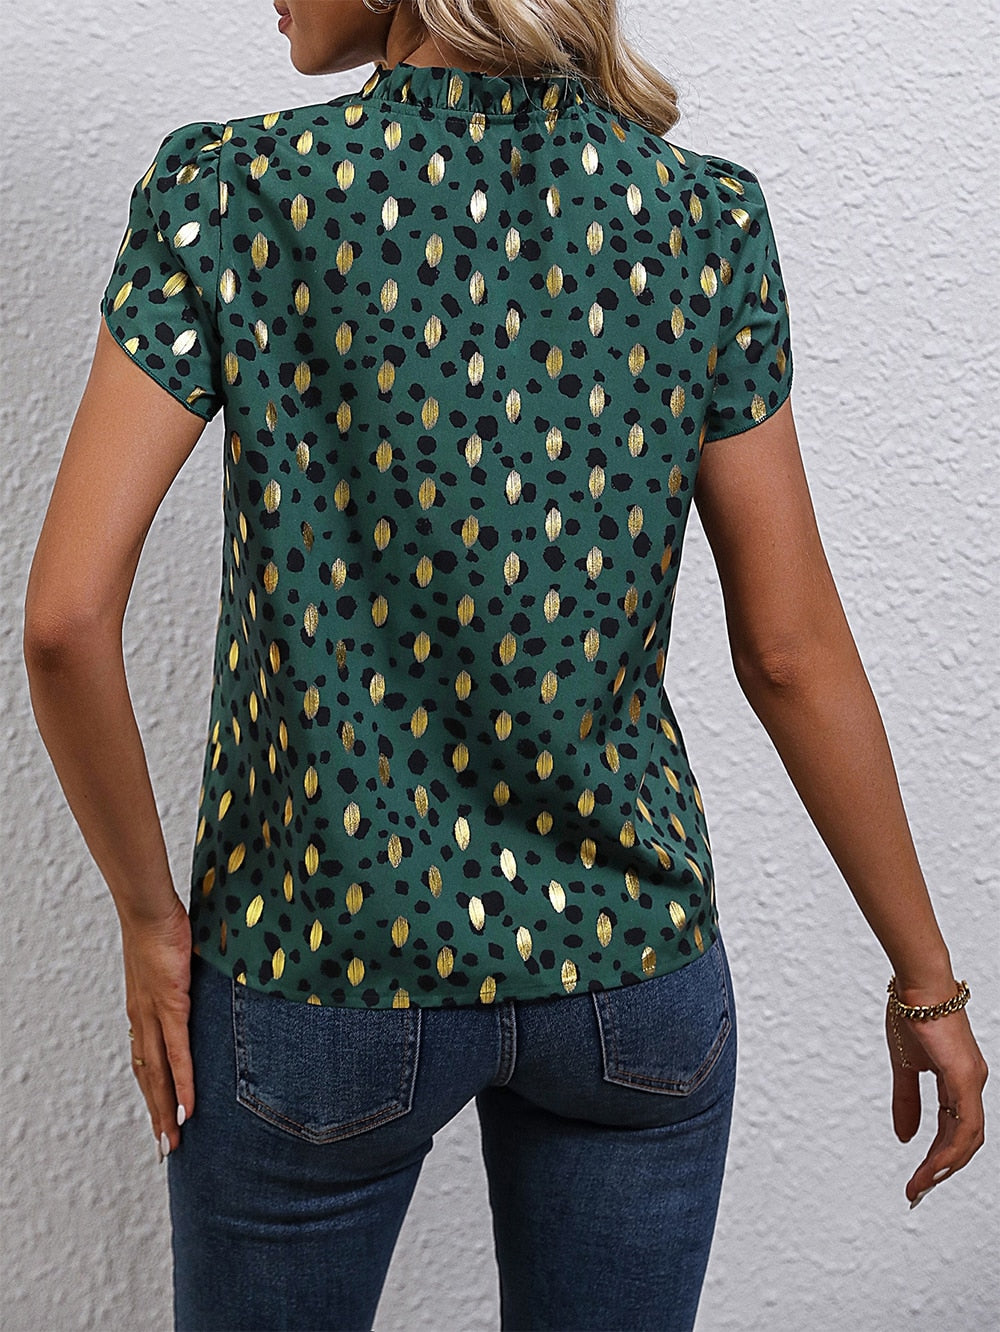 Summer Blouse Women Tops Gold Dot Print Puff Sleeve Shirt